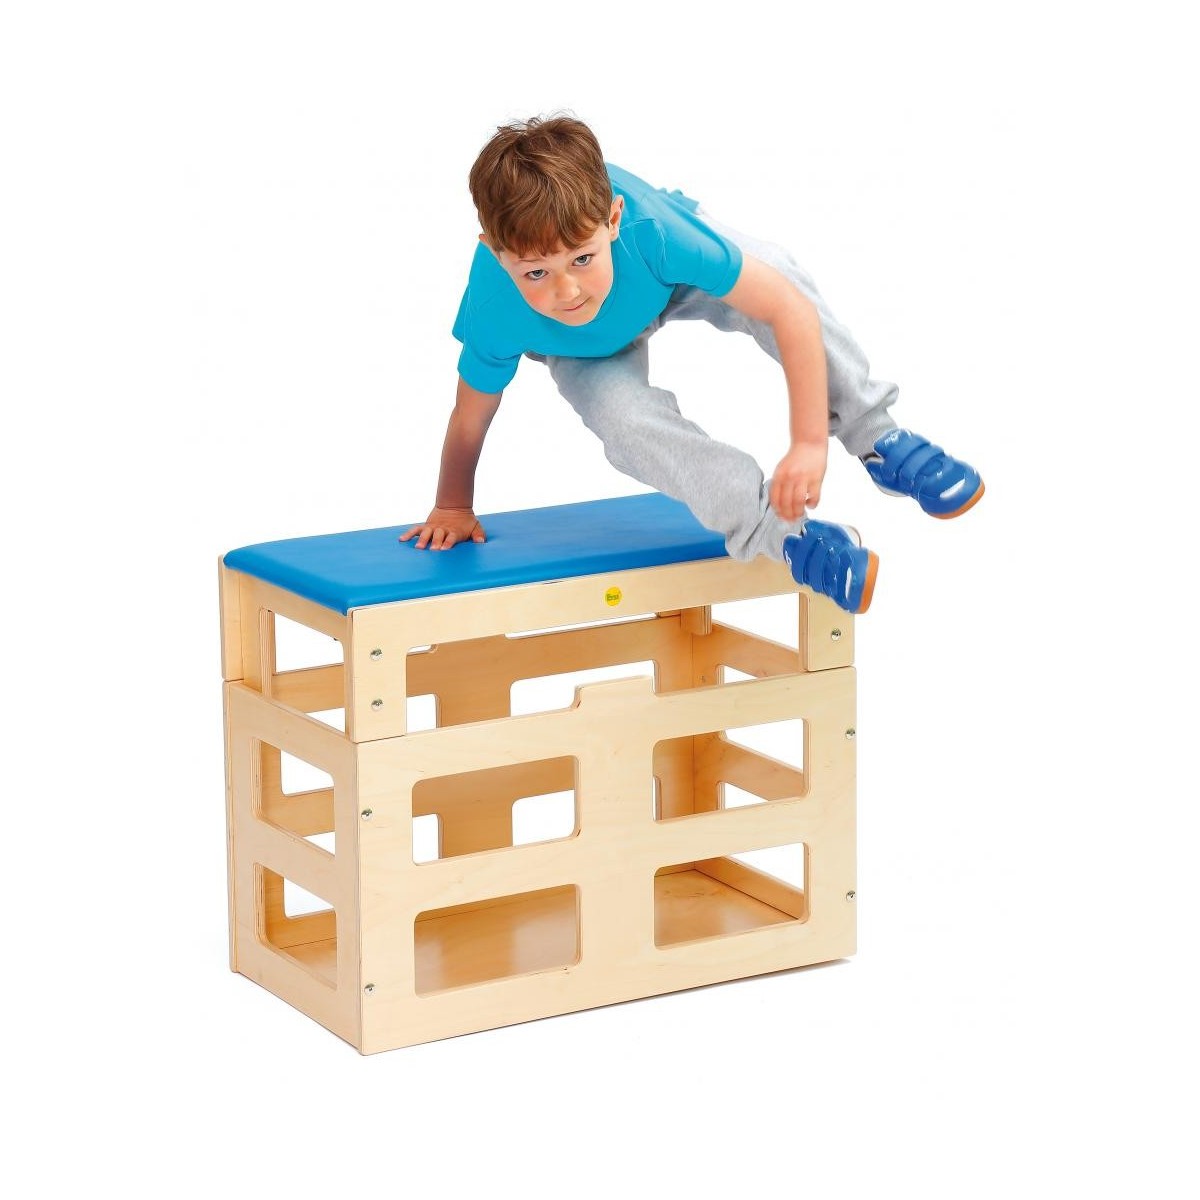 Sportbox rectangulaire Erzi avec top pour enfants - 2